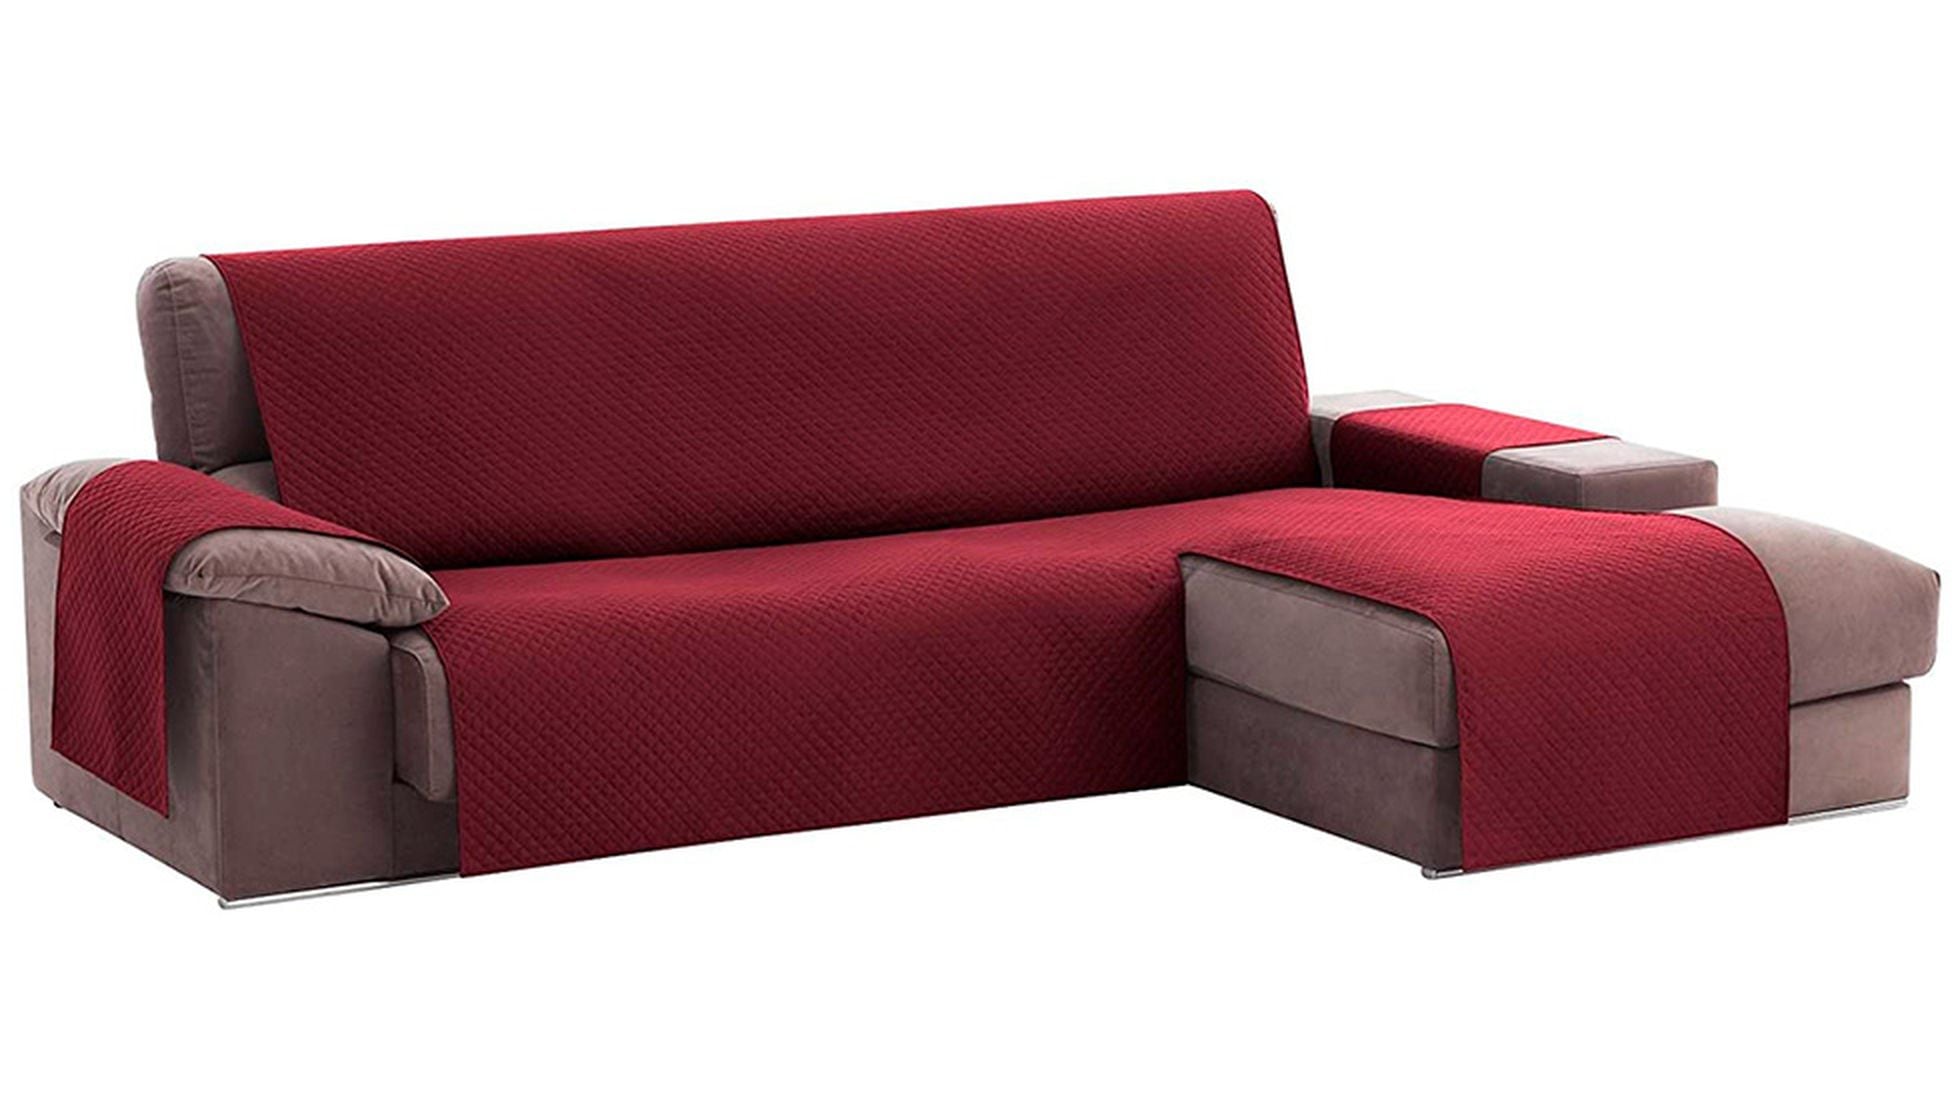 Evita las manchas y los pelos de mascotas con esta para sofá reversible en siete colores | Escaparate: compras y ofertas | EL PAÍS